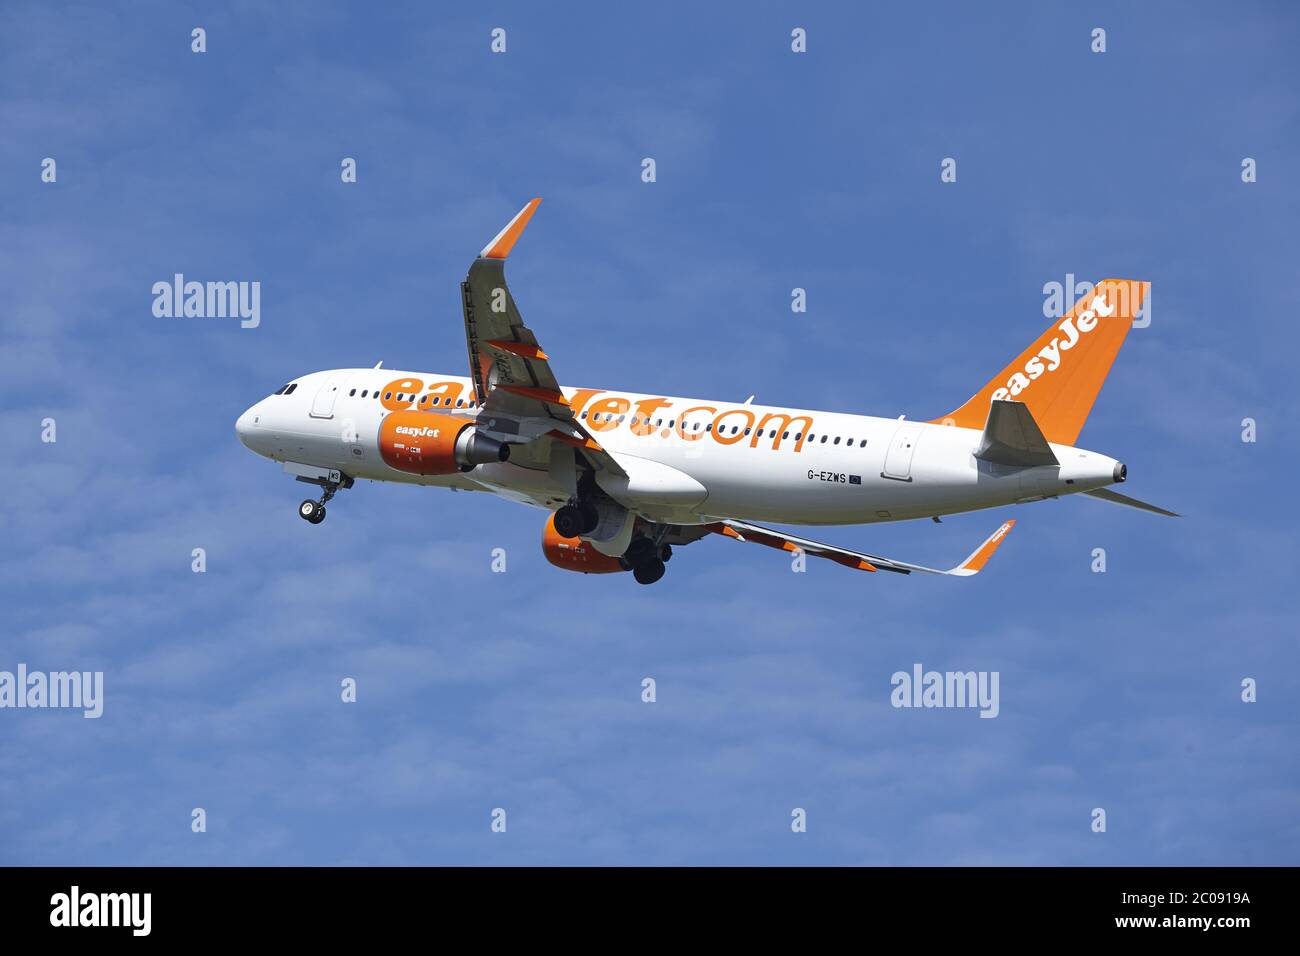 Aeroporto di Amsterdam Schiphol - l'Airbus A320 EasyJet decolli Foto Stock